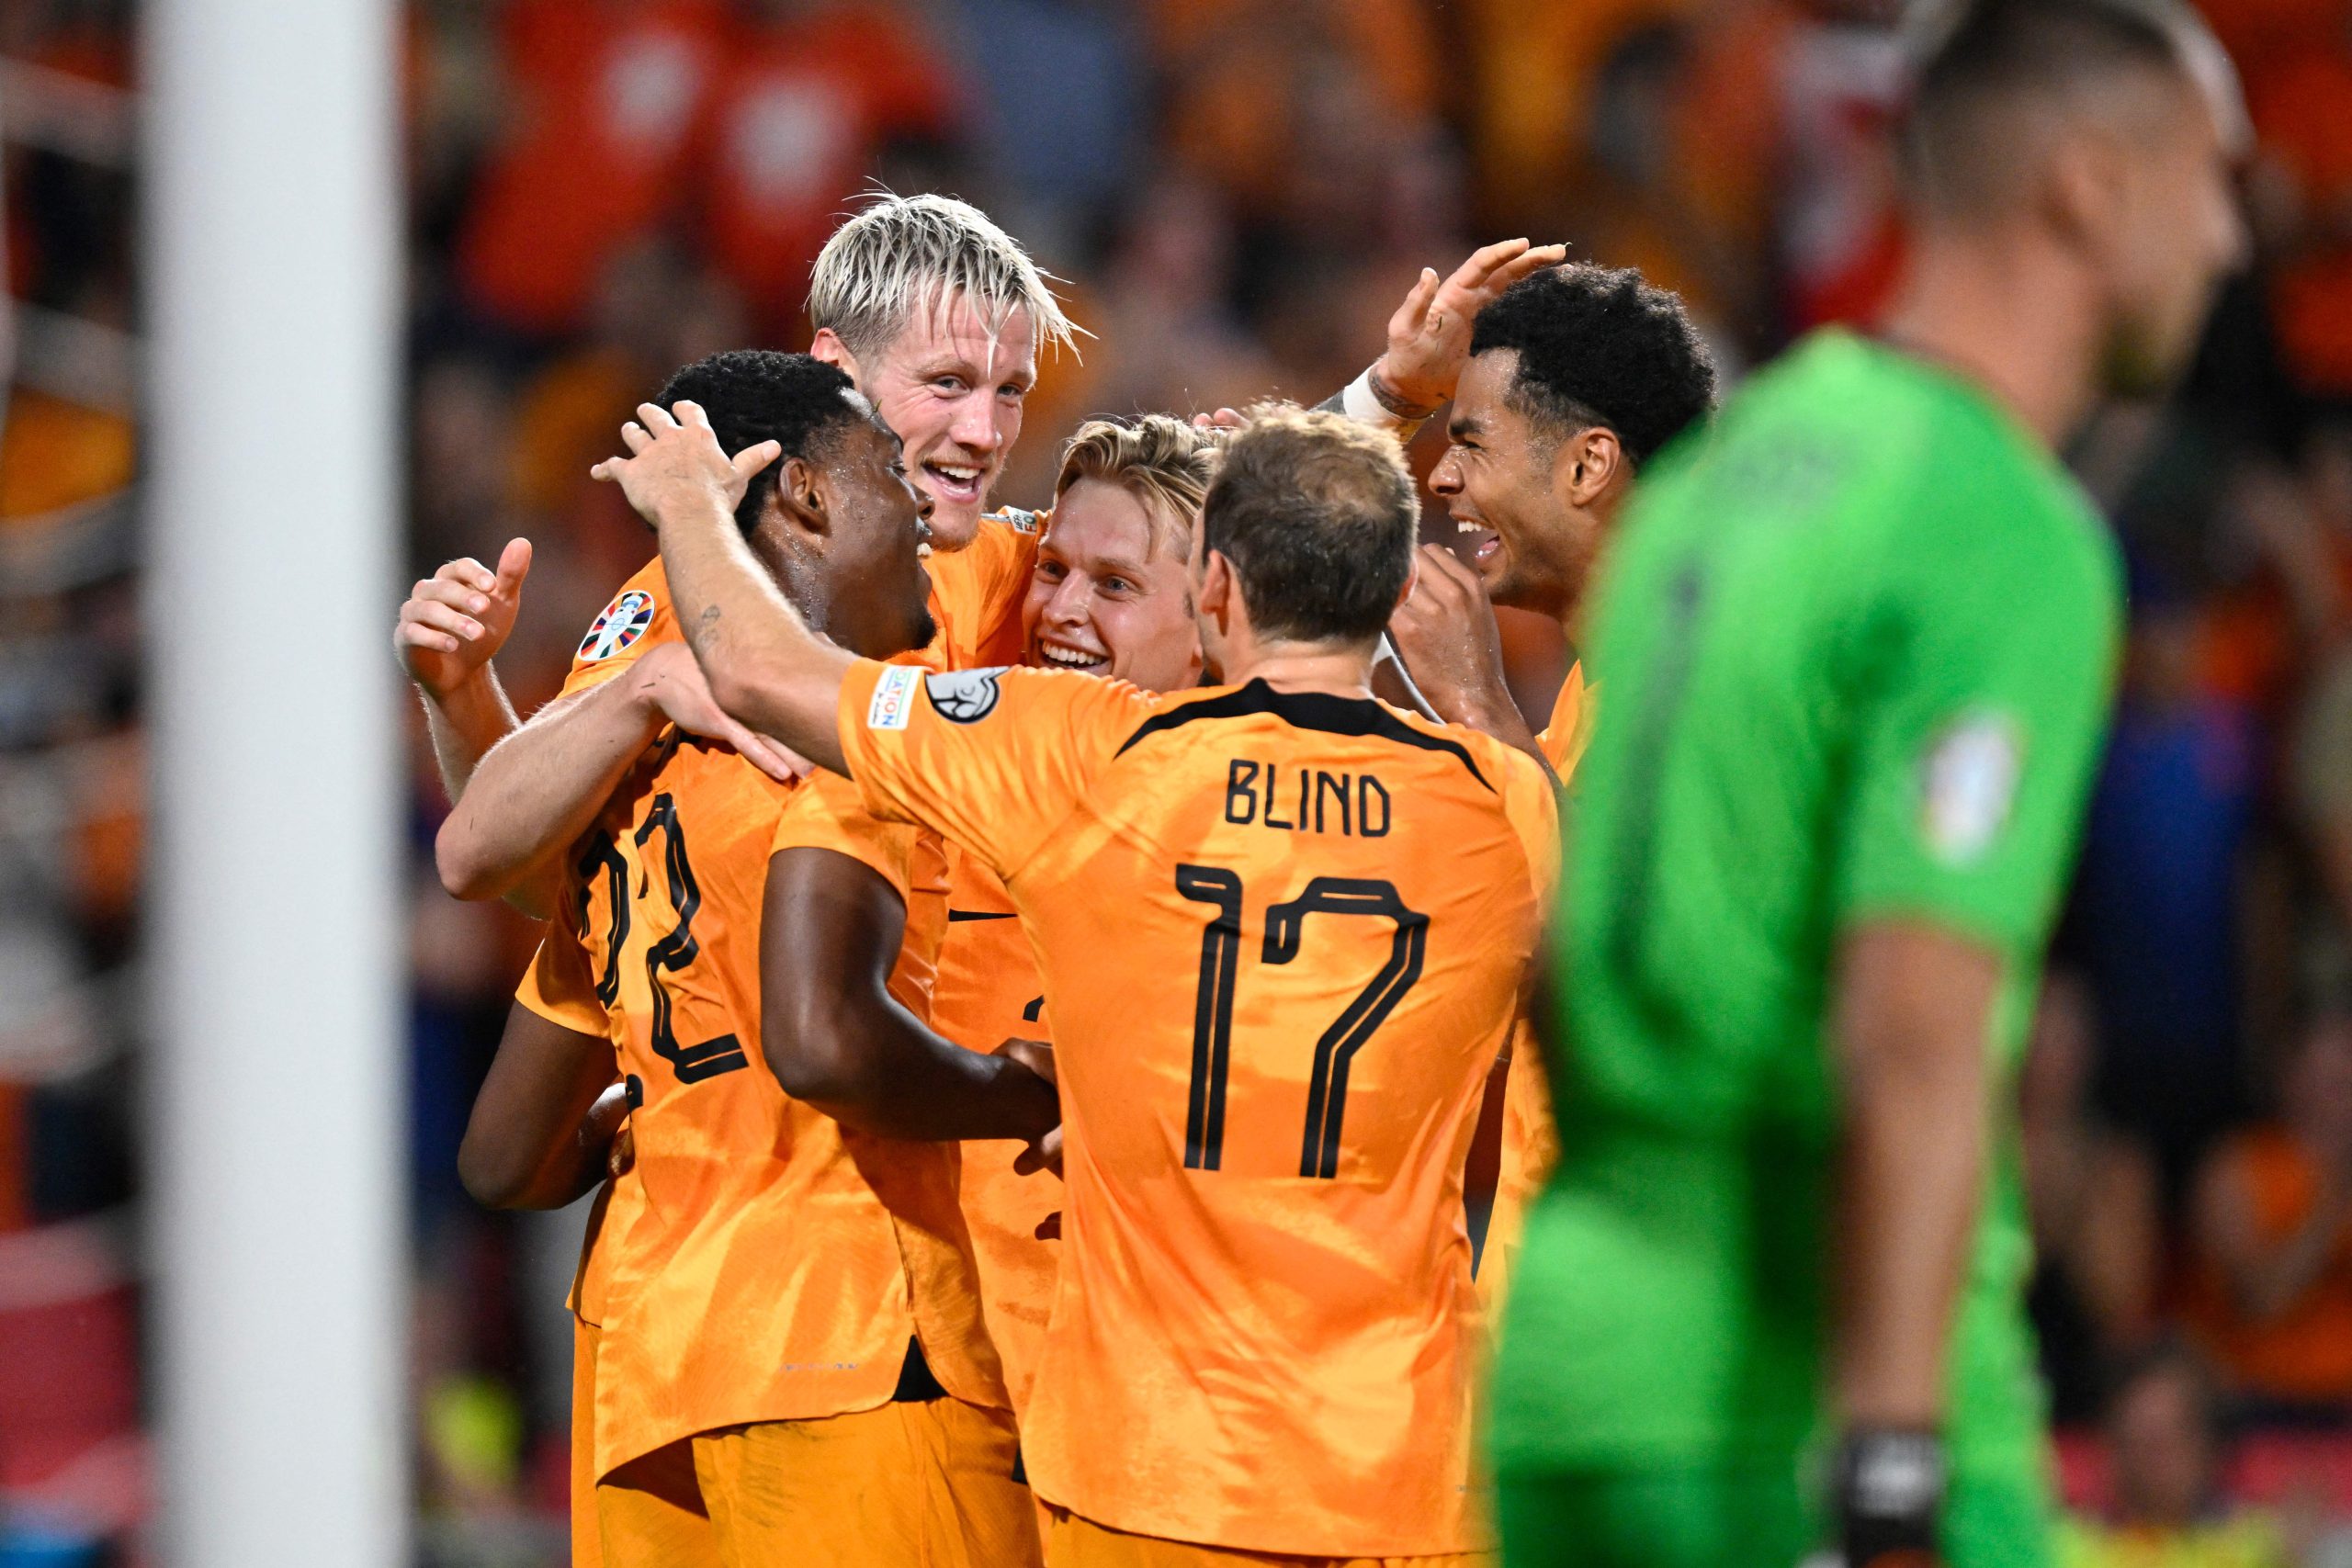 Países Baixos construíram vitória fácil com gols no primeiro tempo (John Thys/AFP via Getty Images)